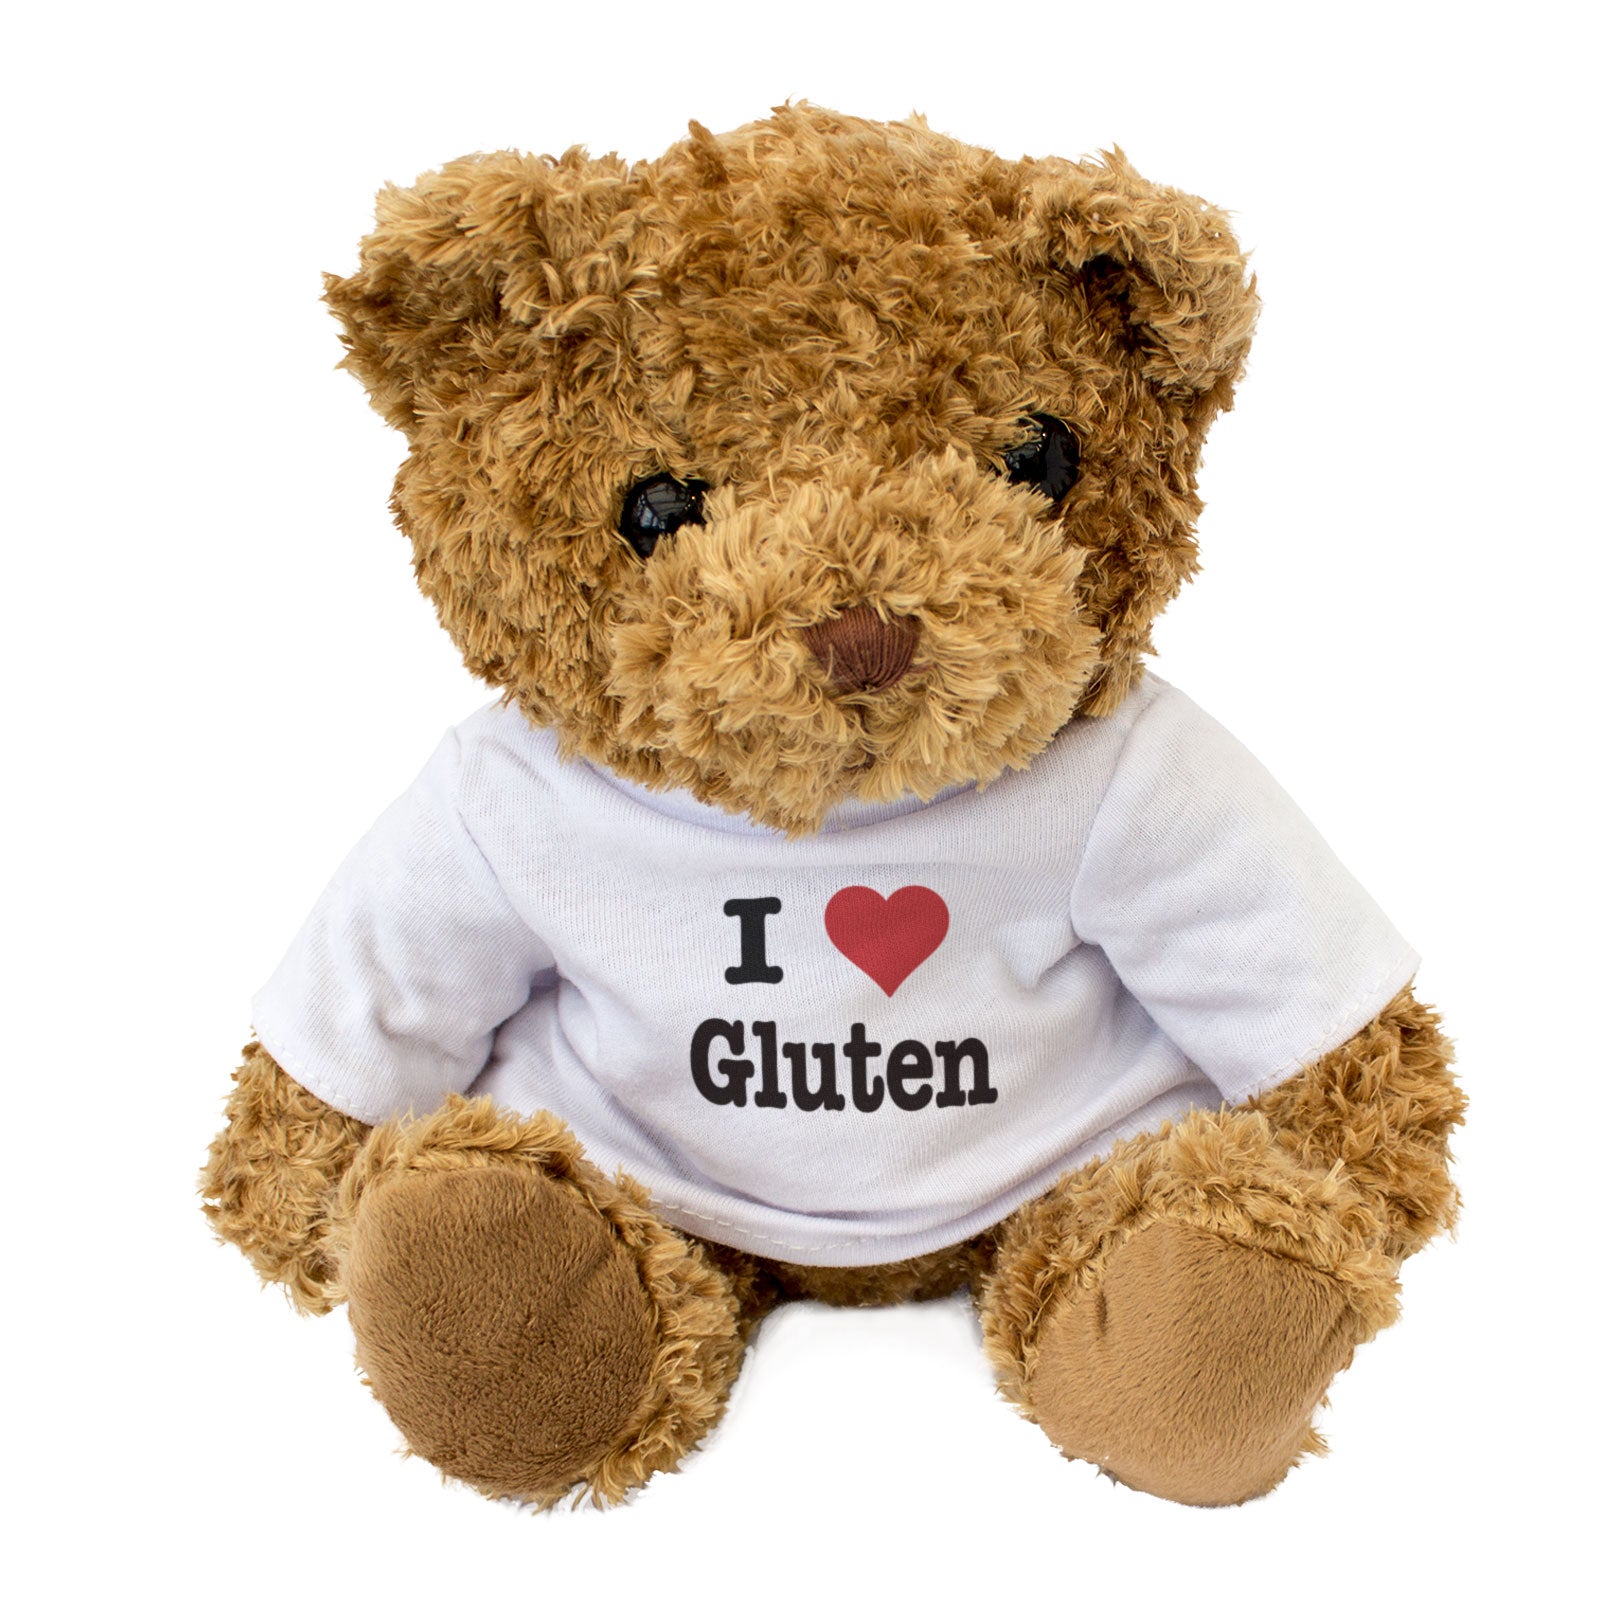 I Love Gluten - Teddy Bear